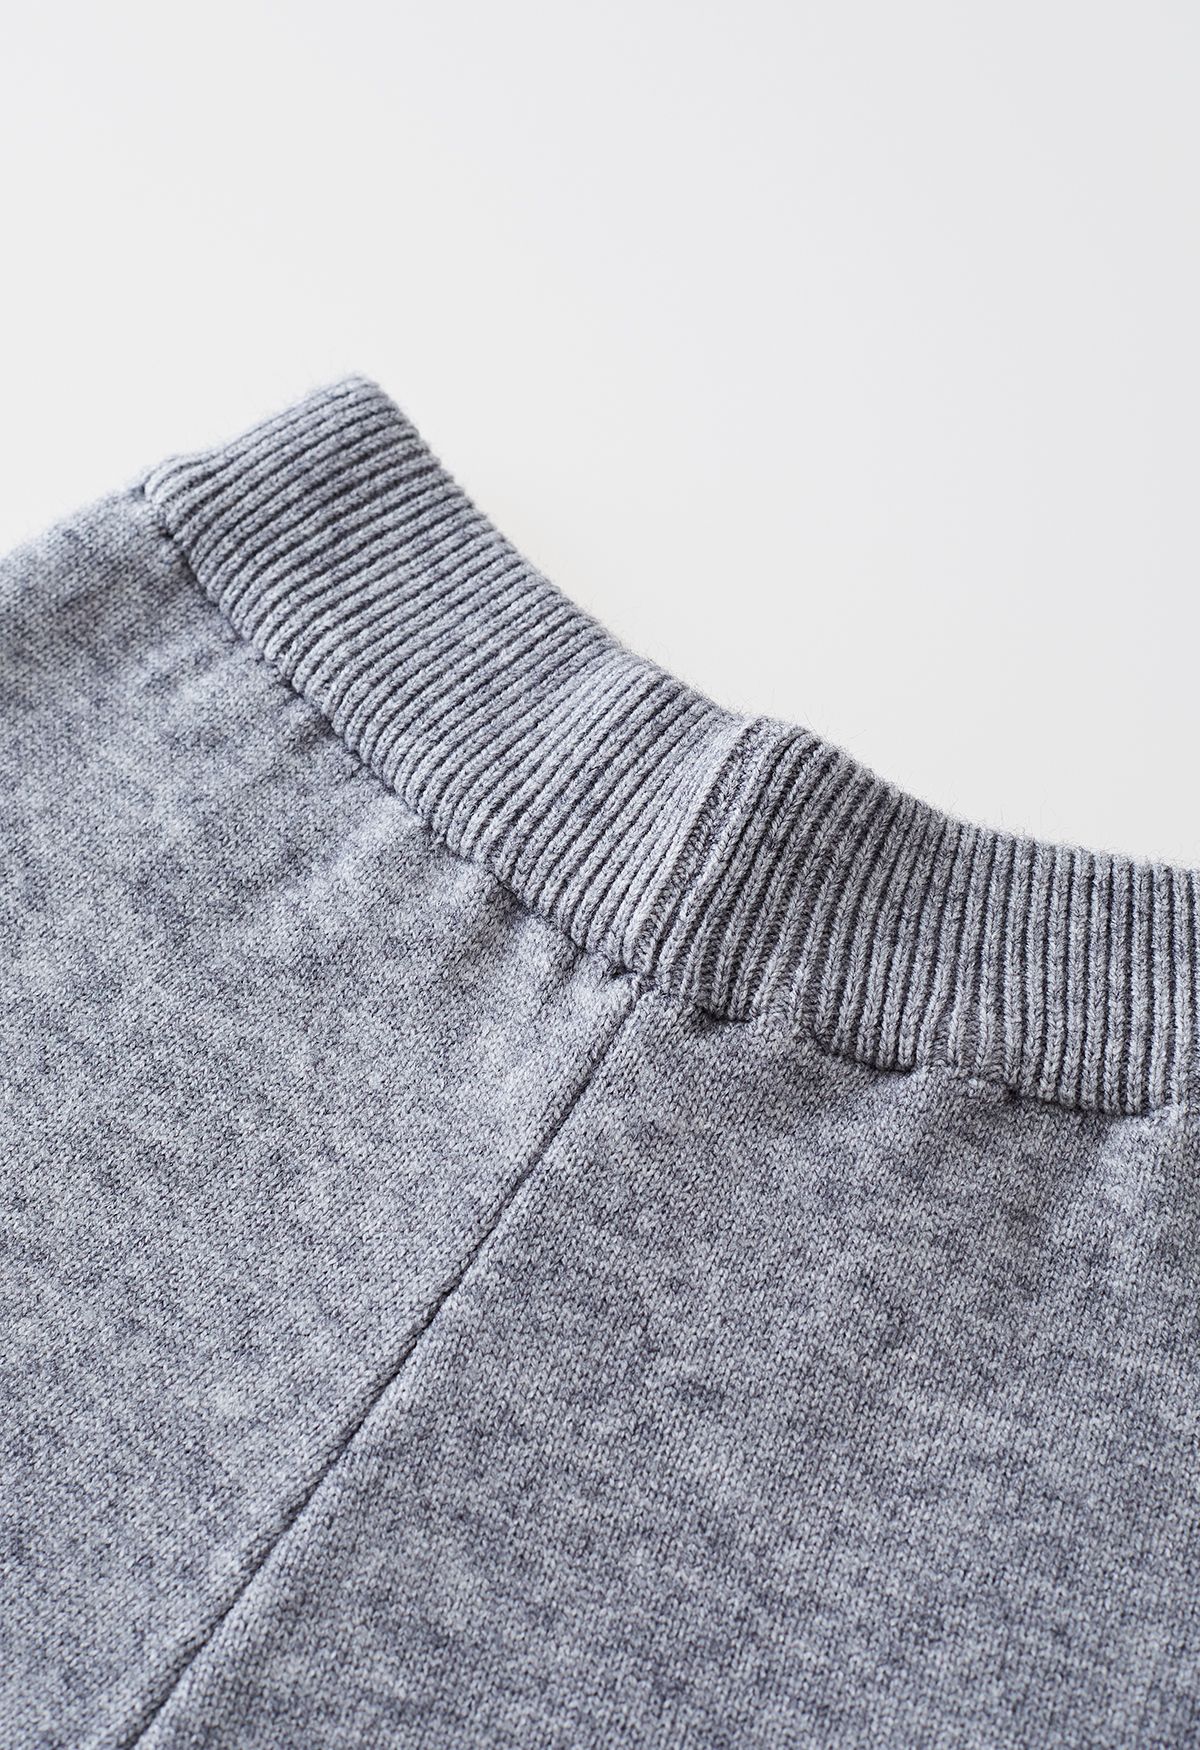 Conjunto de suéter de cuello alto con cuello alto y pantalones de punto en gris